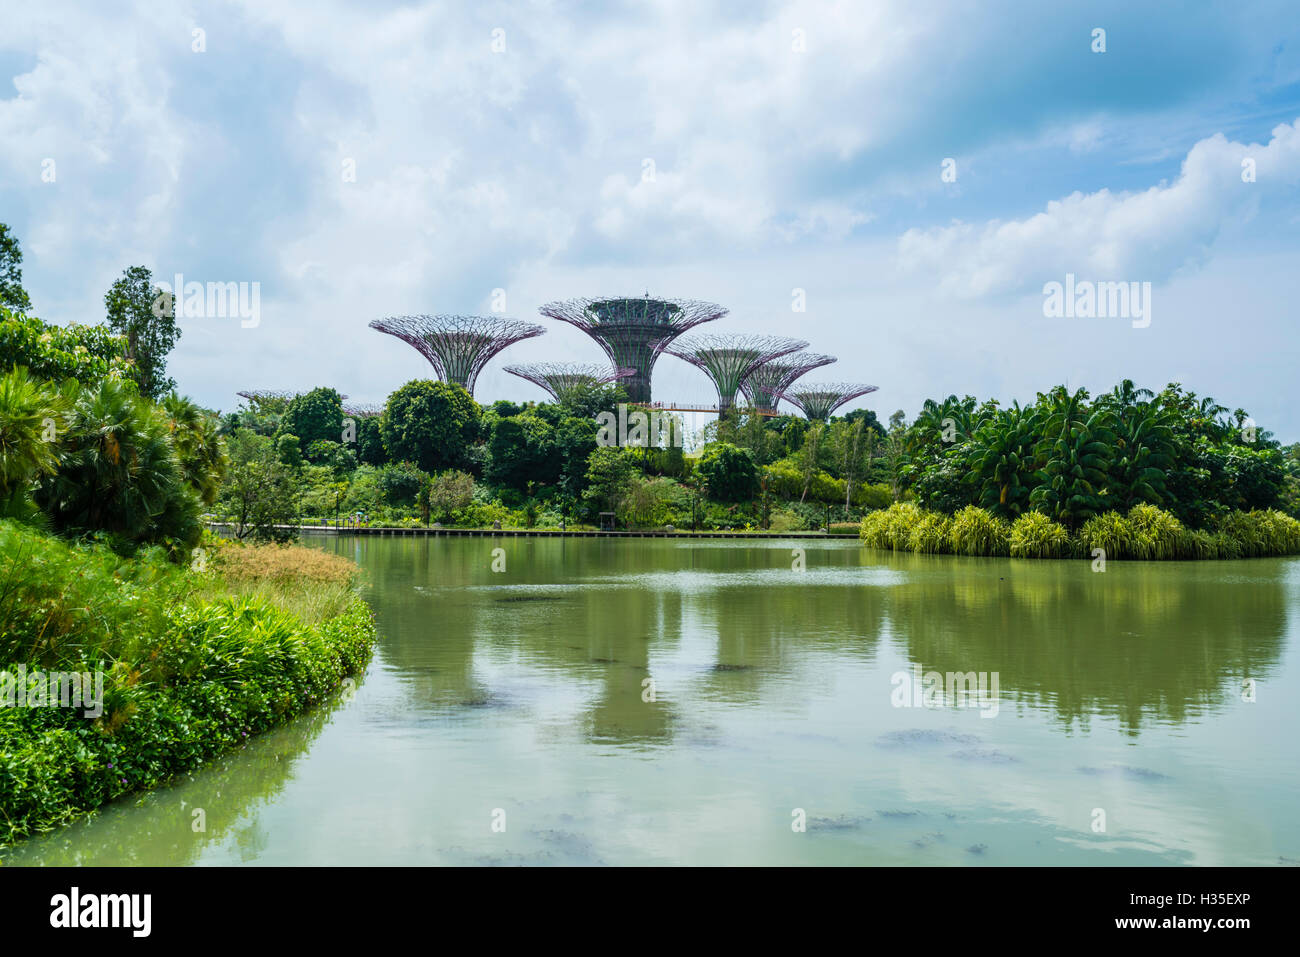 Supertree Grove dans les jardins, près de la baie, un futuriste botanical gardens et parc, Marina Bay, Singapour Banque D'Images